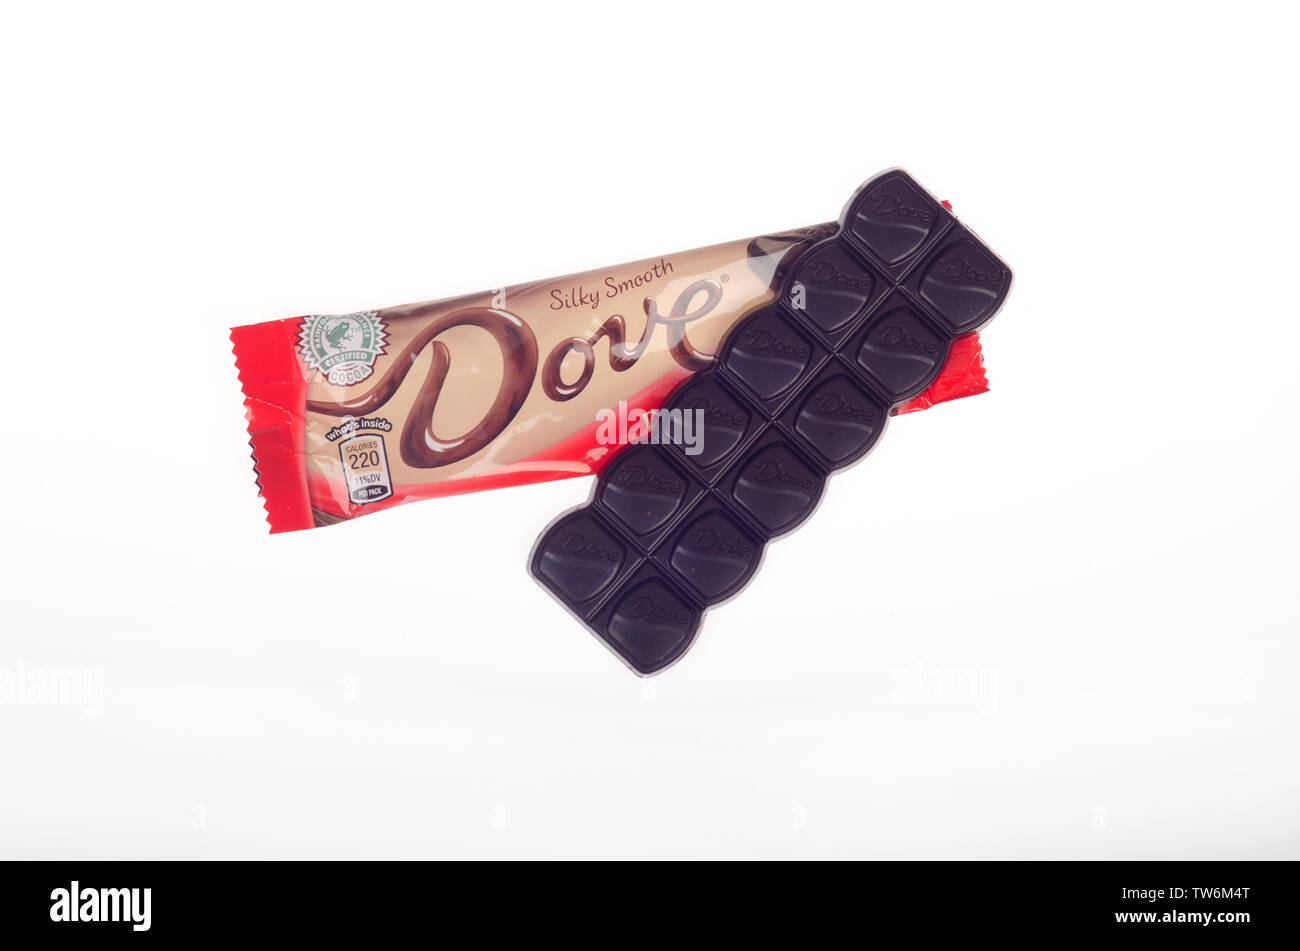 Colomba dark chocolate candy bar da Mars Inc. con involucro aperto Foto Stock